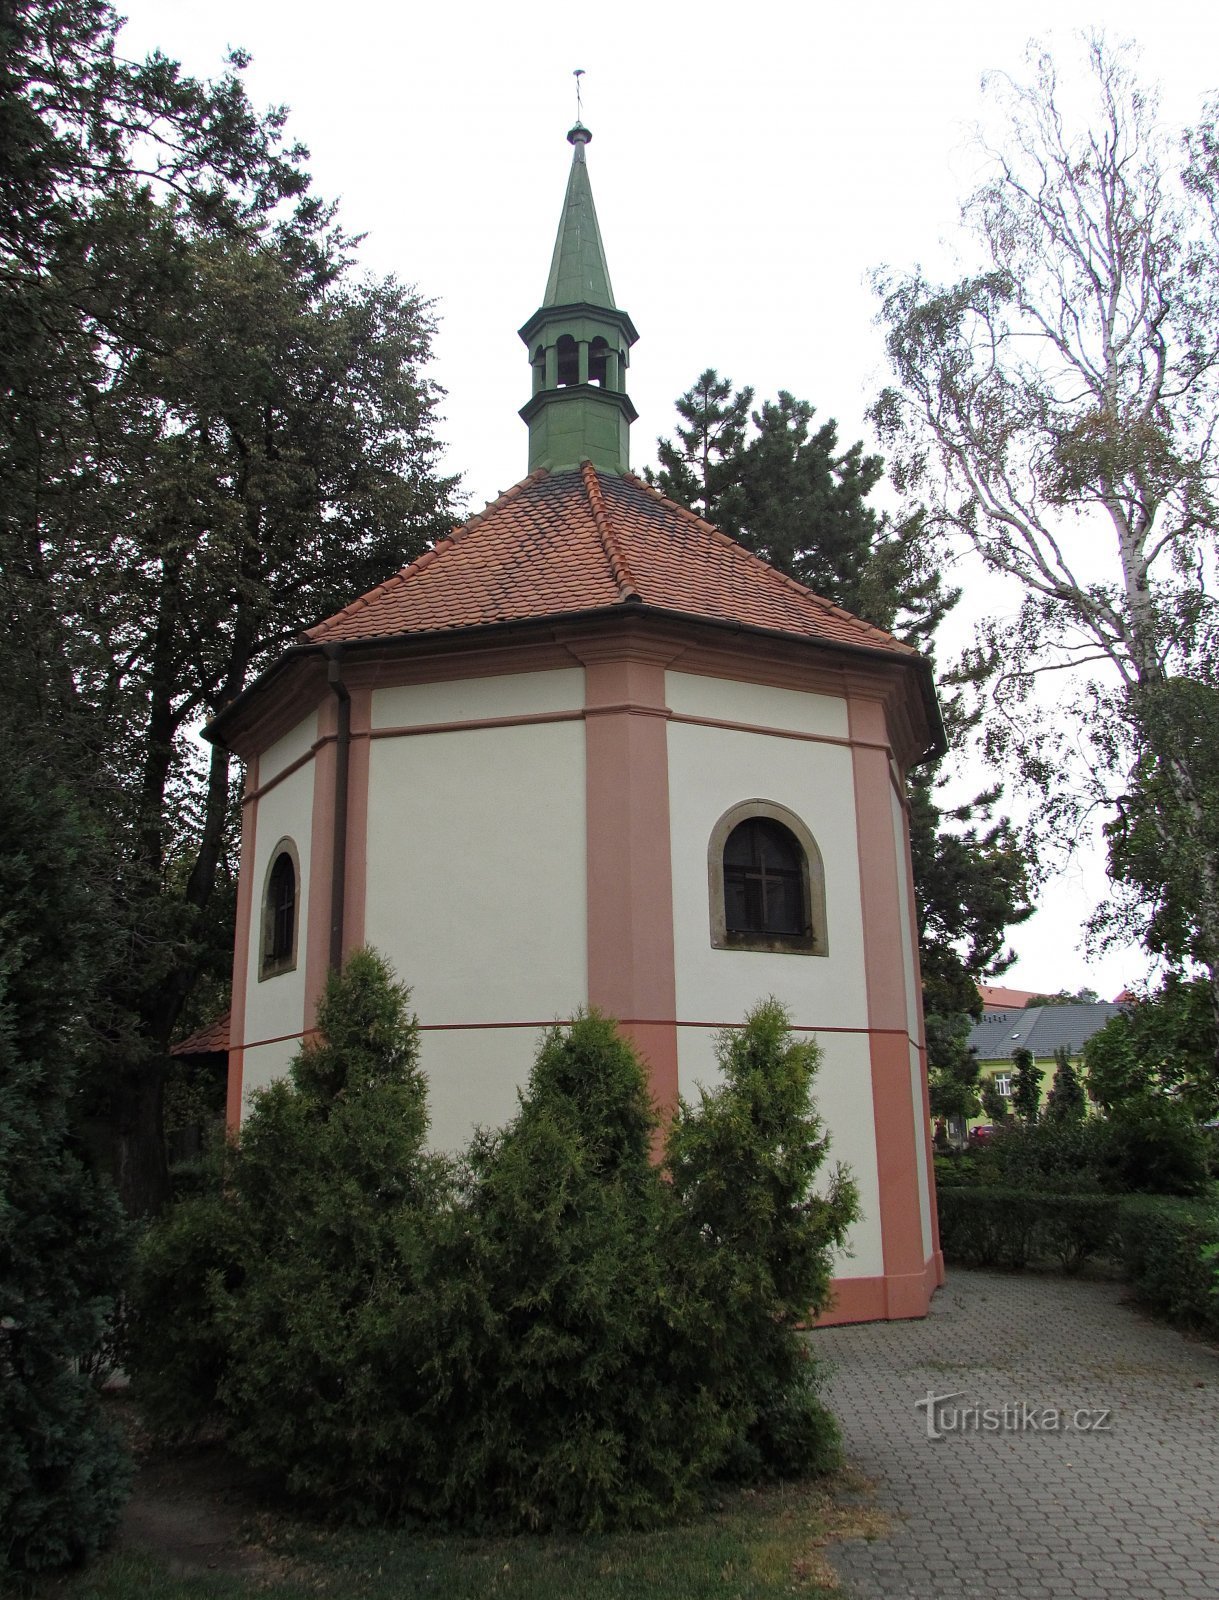 Holešovská Pyhän Ristin kappeli